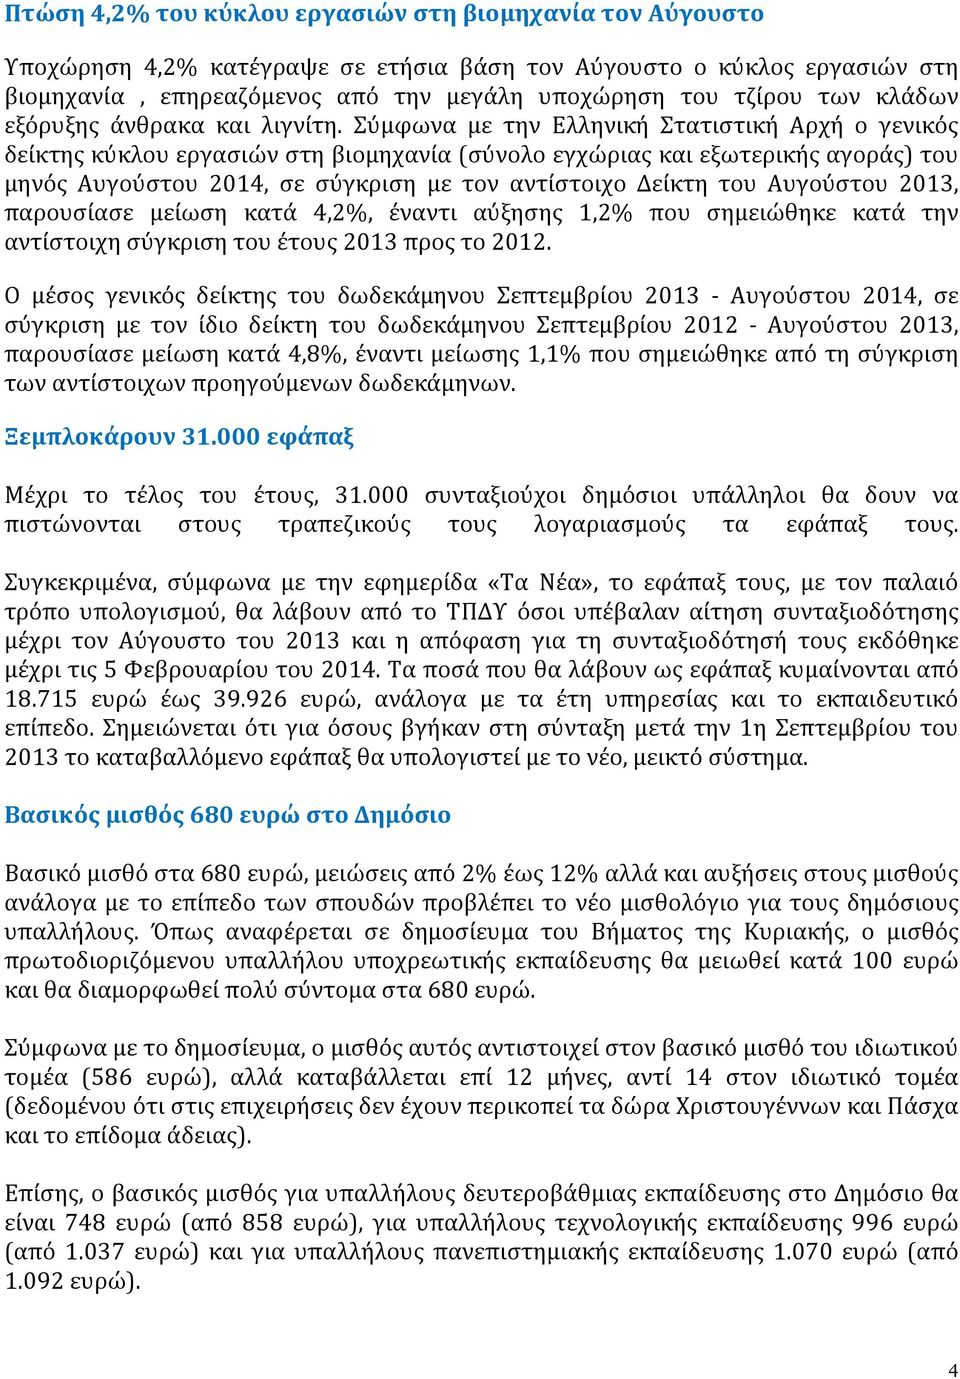 Σύμφωνα με την Ελληνική Στατιστική Αρχή ο γενικός δείκτης κύκλου εργασιών στη βιομηχανία (σύνολο εγχώριας και εξωτερικής αγοράς) του μηνός Αυγούστου 2014, σε σύγκριση με τον αντίστοιχο Δείκτη του